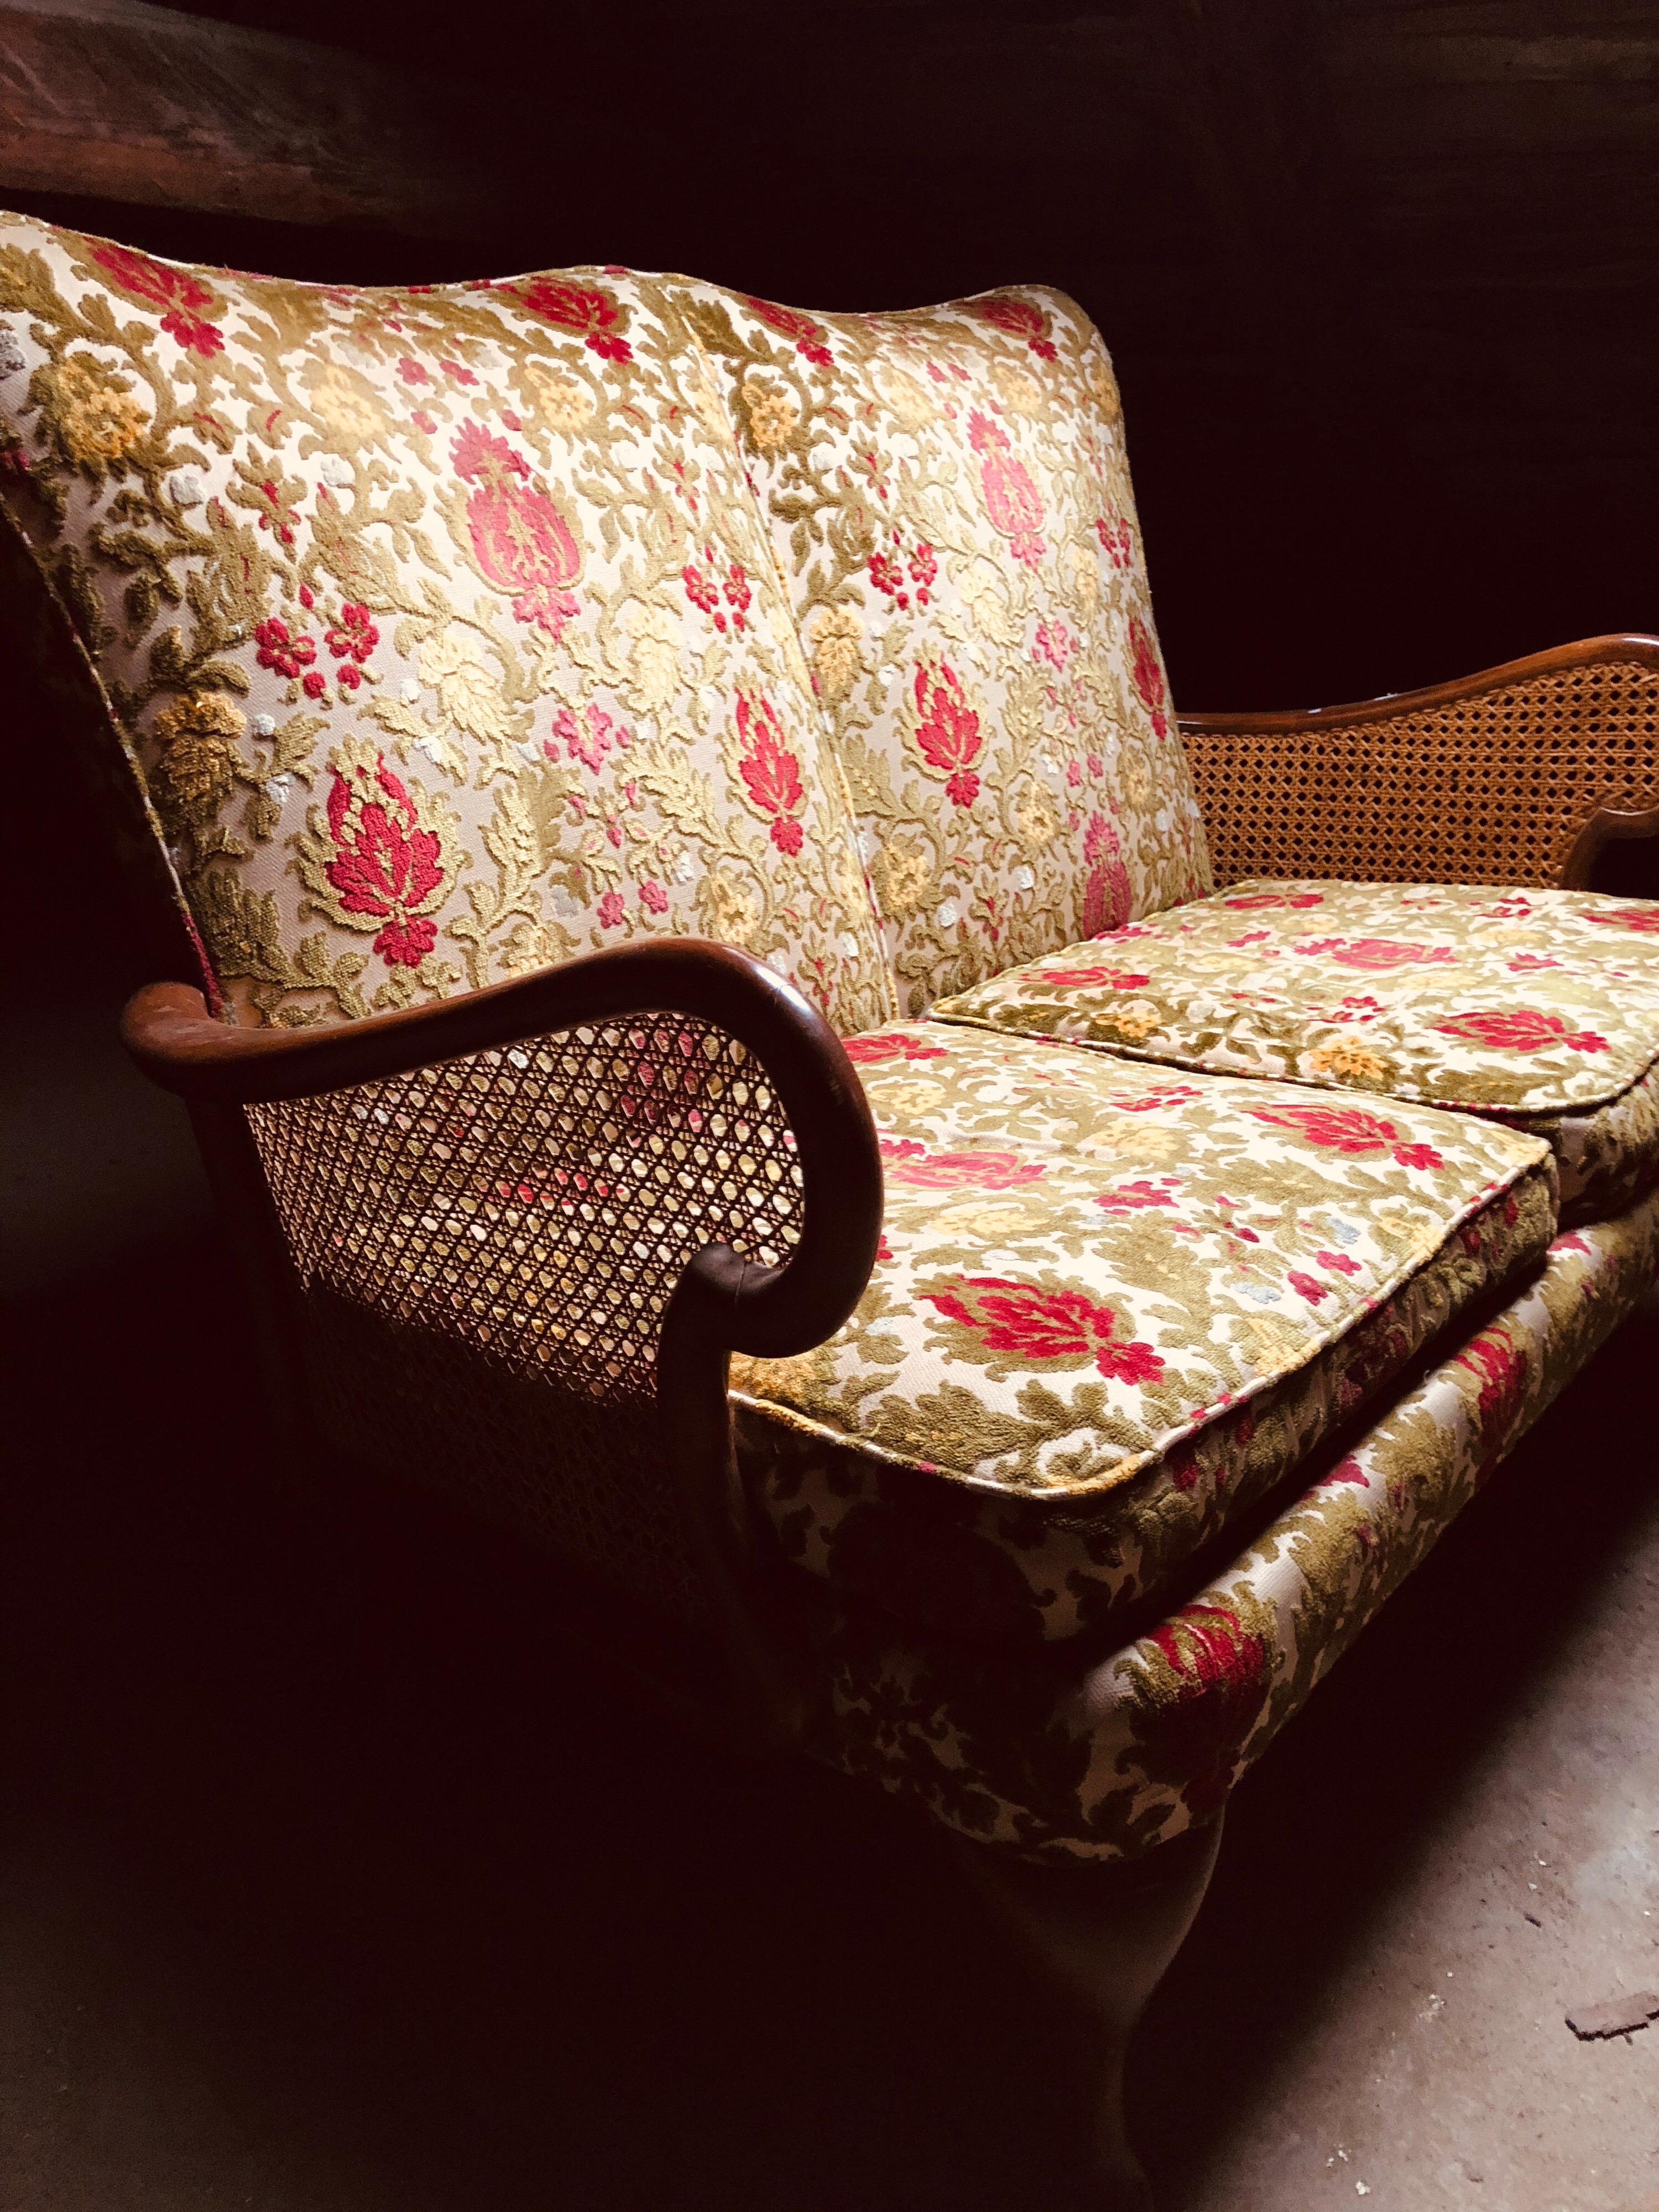 Französisches zweisitziges Mahagoni-Canapé mit Rohrarmlehnen und Originalpolsterung.
Es gibt zwei Sessel, die perfekt dazu passen könnten.
Frankreich, um 1920.